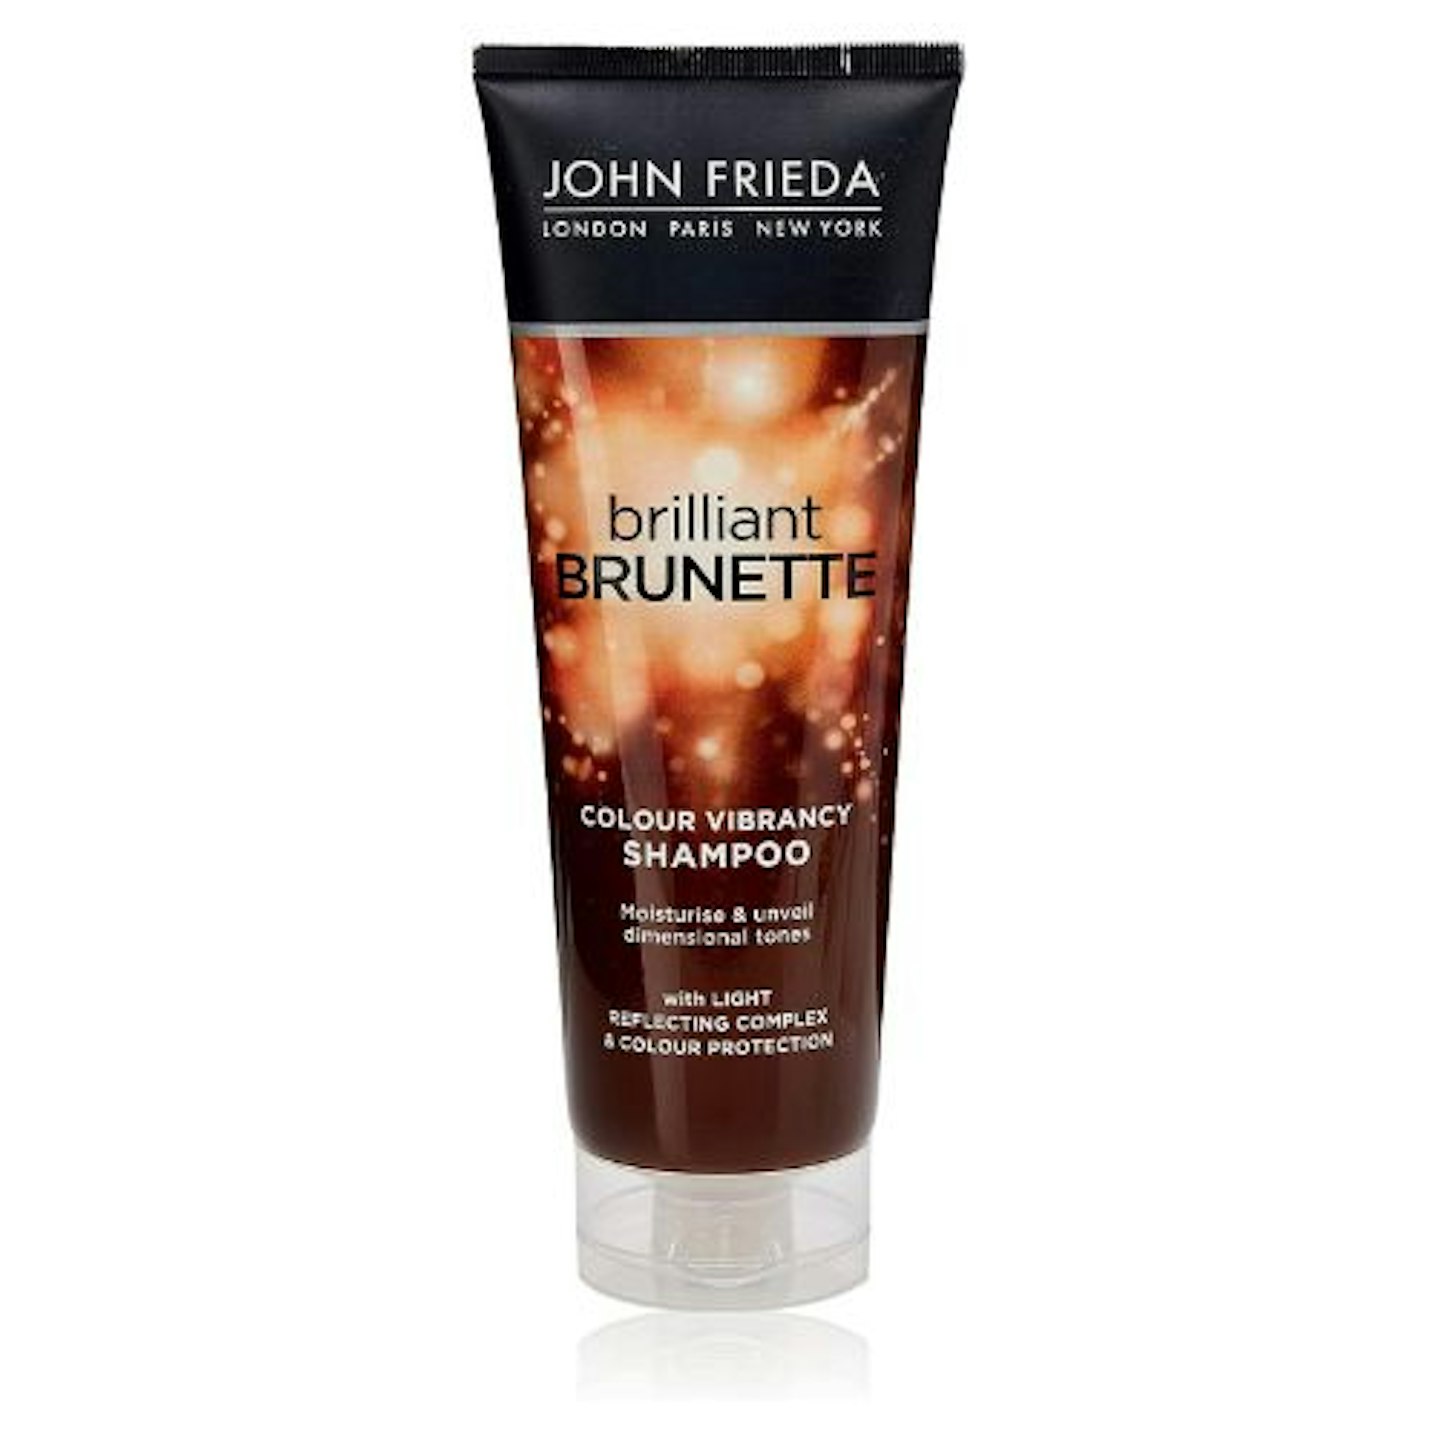 John Frieda Brilliant Brunette Colour Vibrancy Shampoo